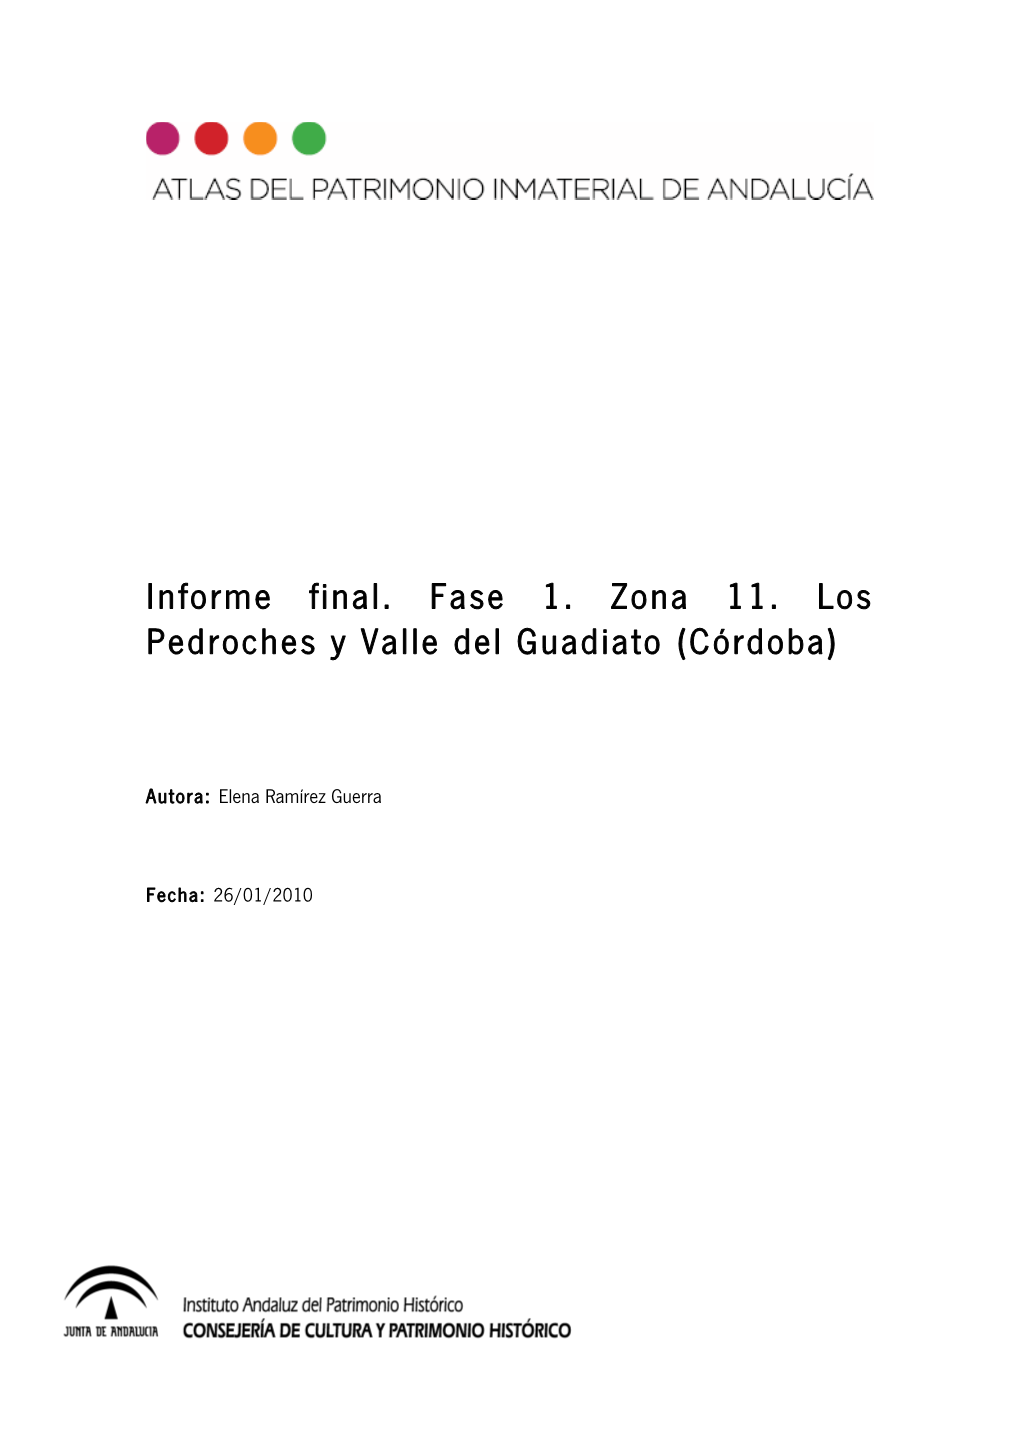 Informe Final. Fase 1. Zona 11. Los Pedroches Y Valle Del Guadiato (Córdoba)